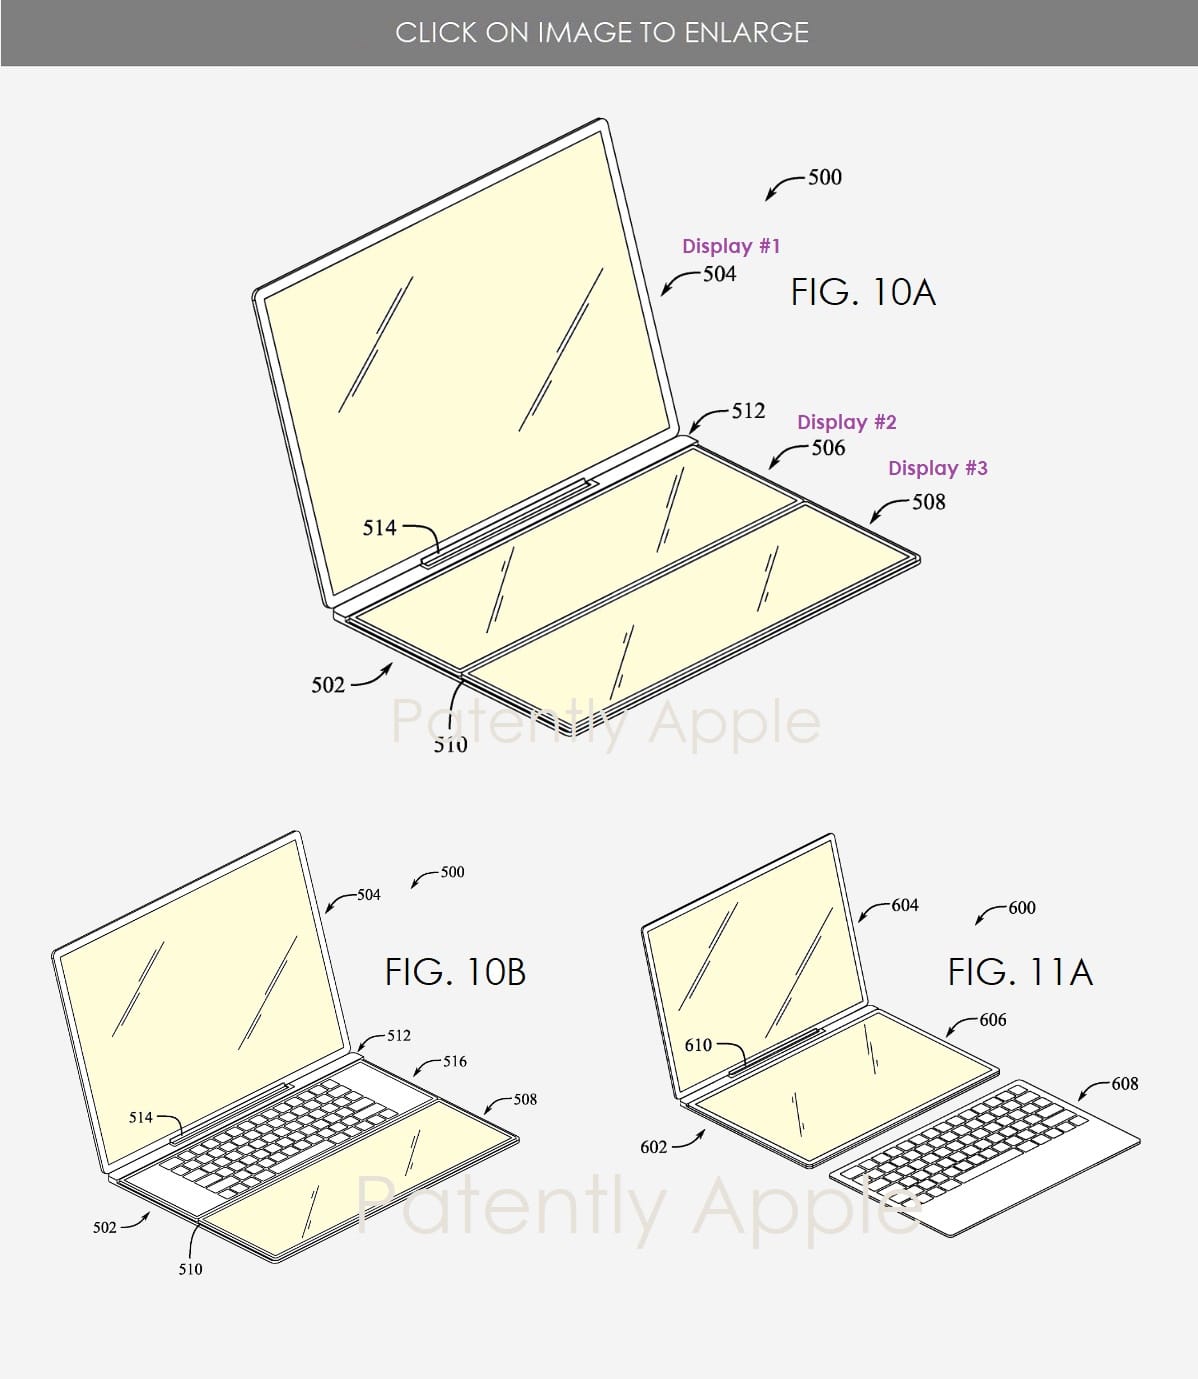 苹果新专利：采用模块化可拆卸设计的 MacBook，满足不同场景需求